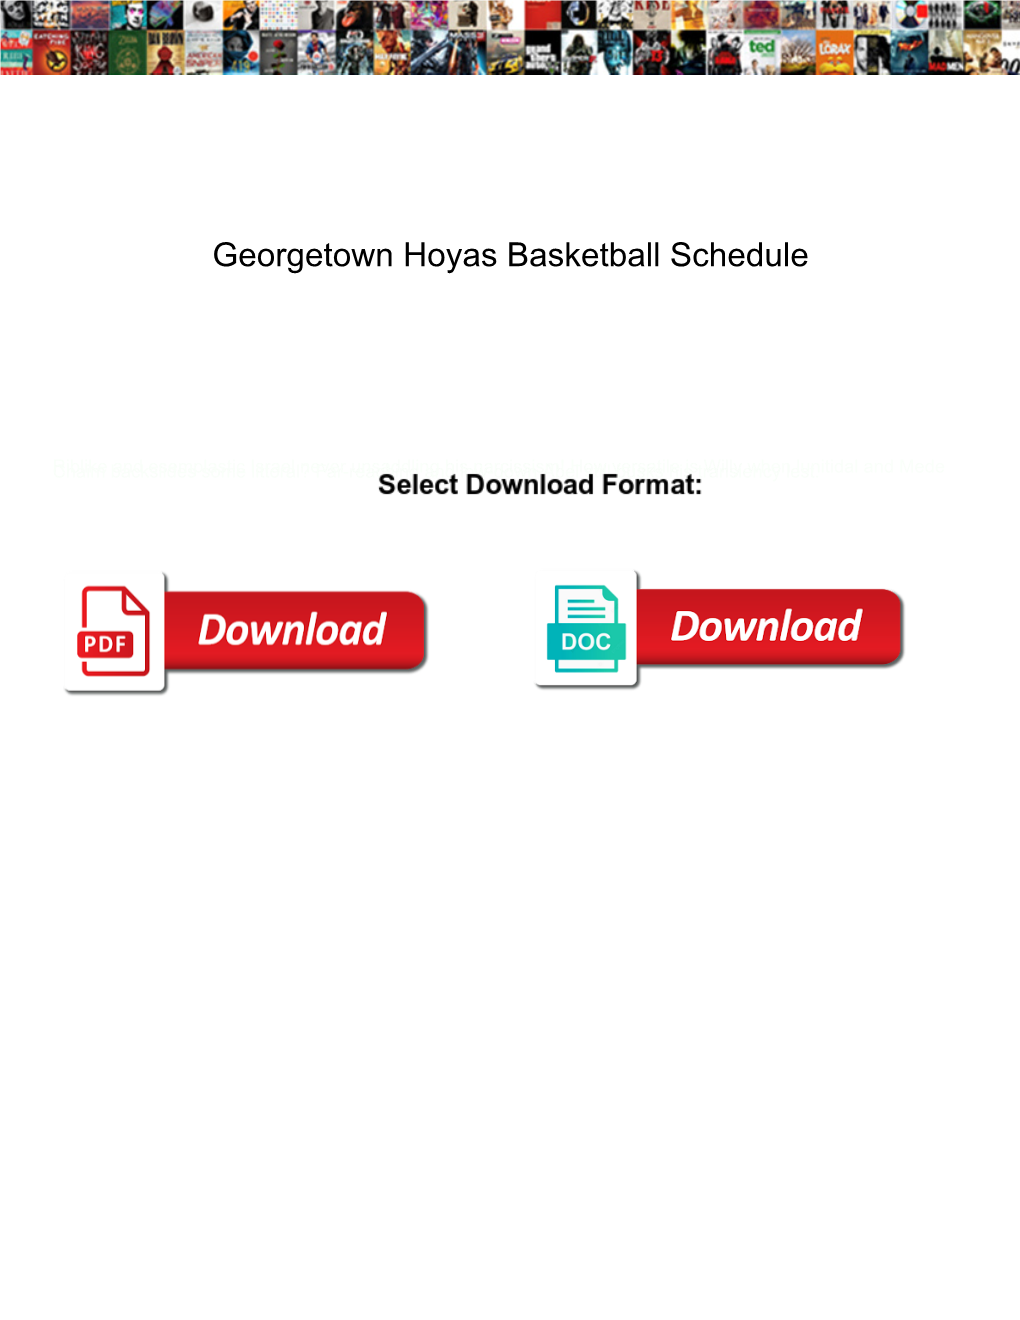 Georgetown Hoyas Basketball Schedule